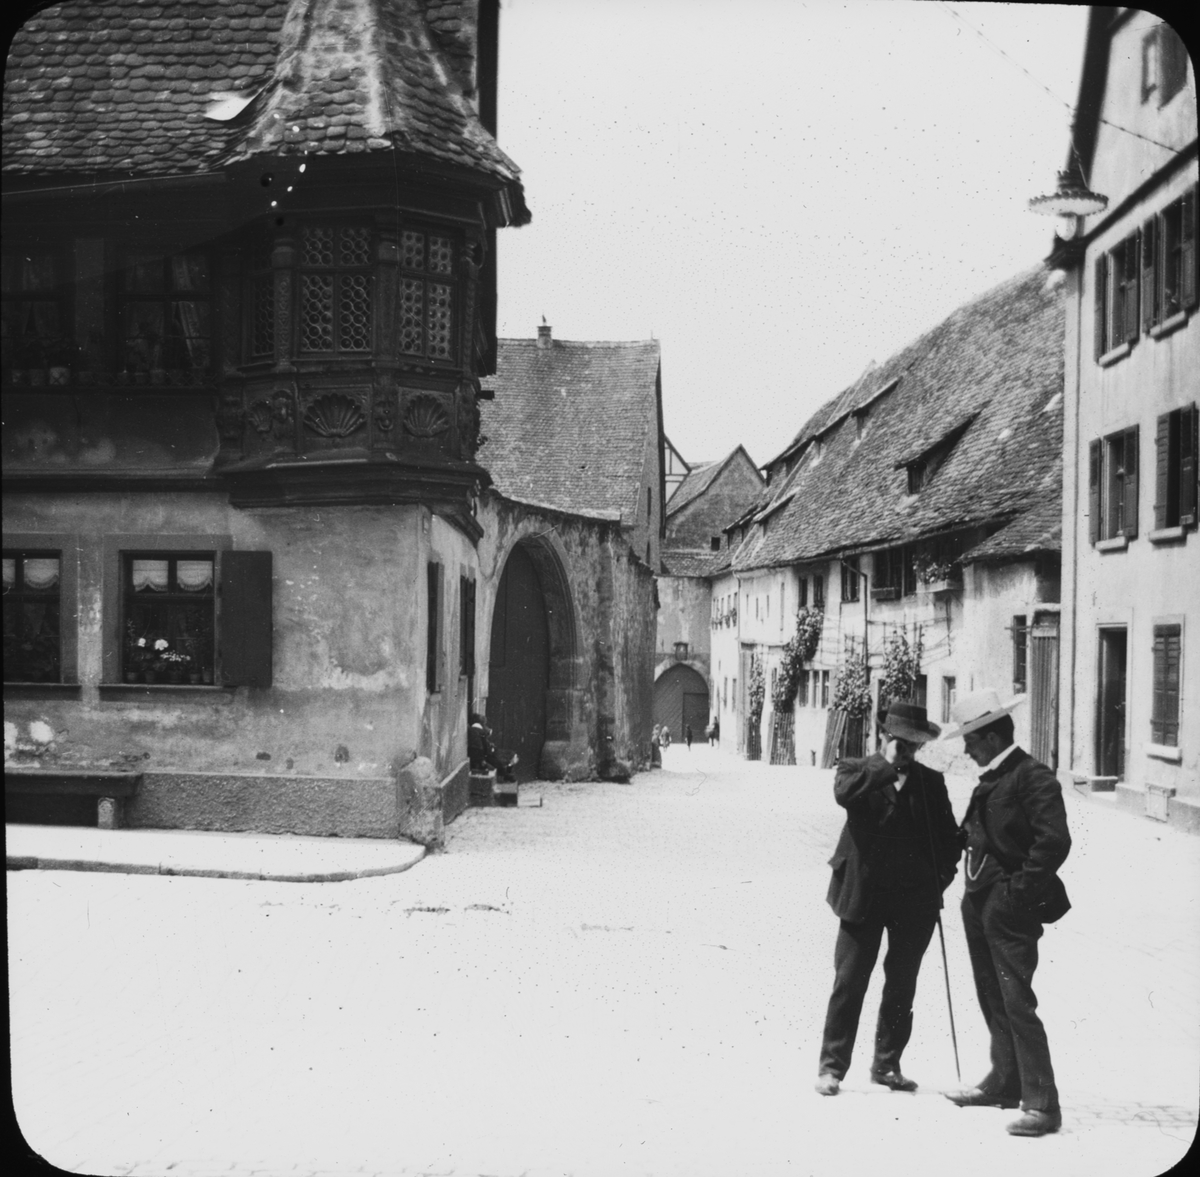 Skioptikonbild med motiv av två språkande män på gata, Klingen Strasse, i Rothenburg.
Bilden har förvarats i kartong märkt: Vårresan 1910. Rothenburg. XXX. Text på bild: " Klingen Strasse".